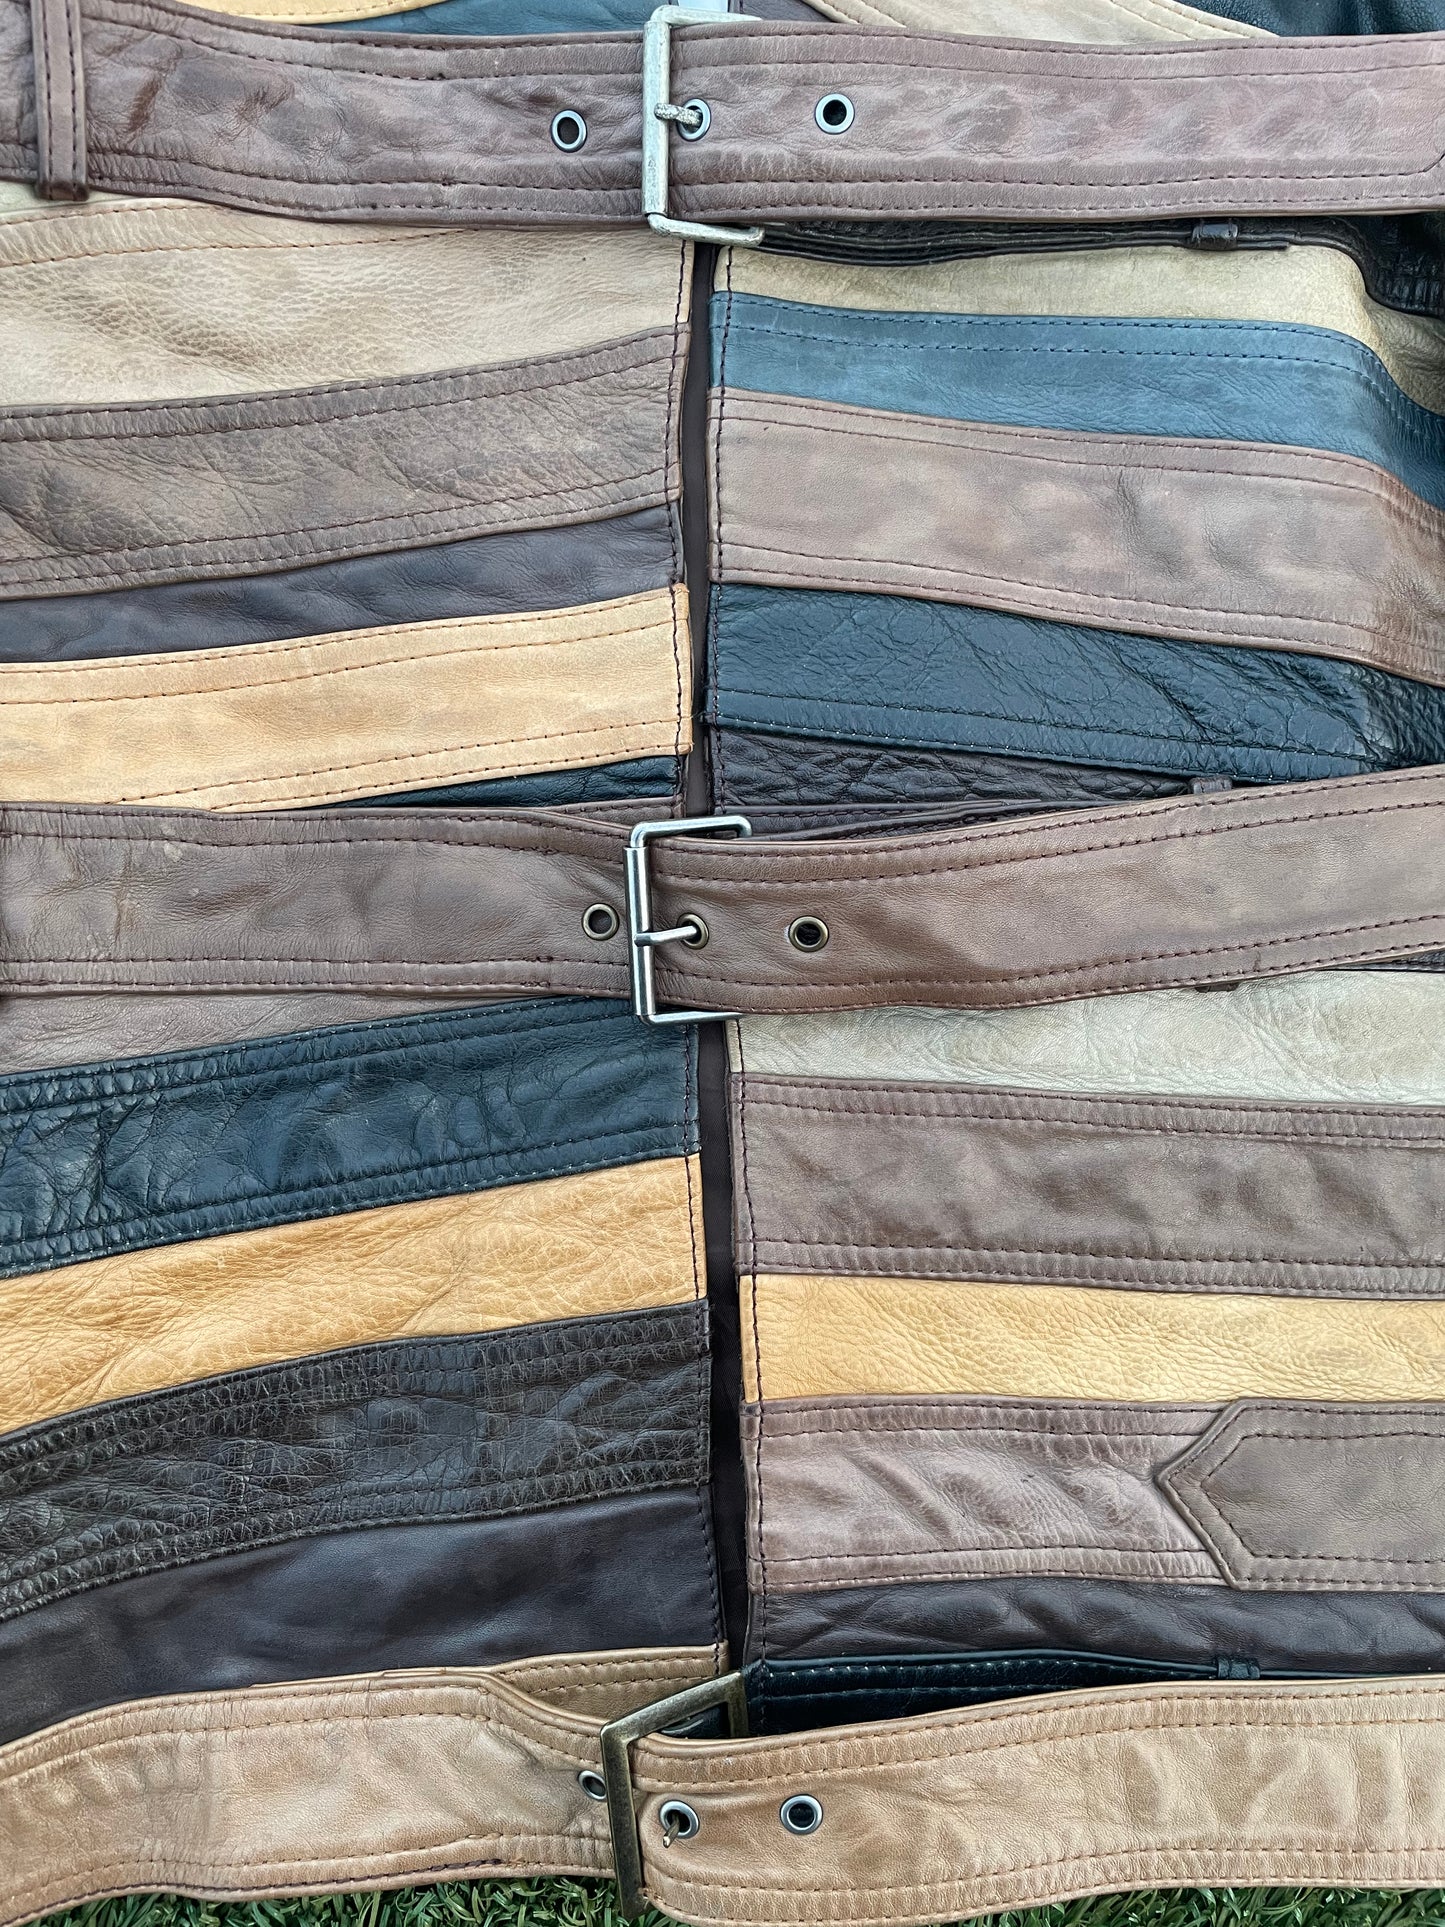 FW12 Maison Margiela X H&M Artisanal Leather Belt Jacket (Re-Edition)